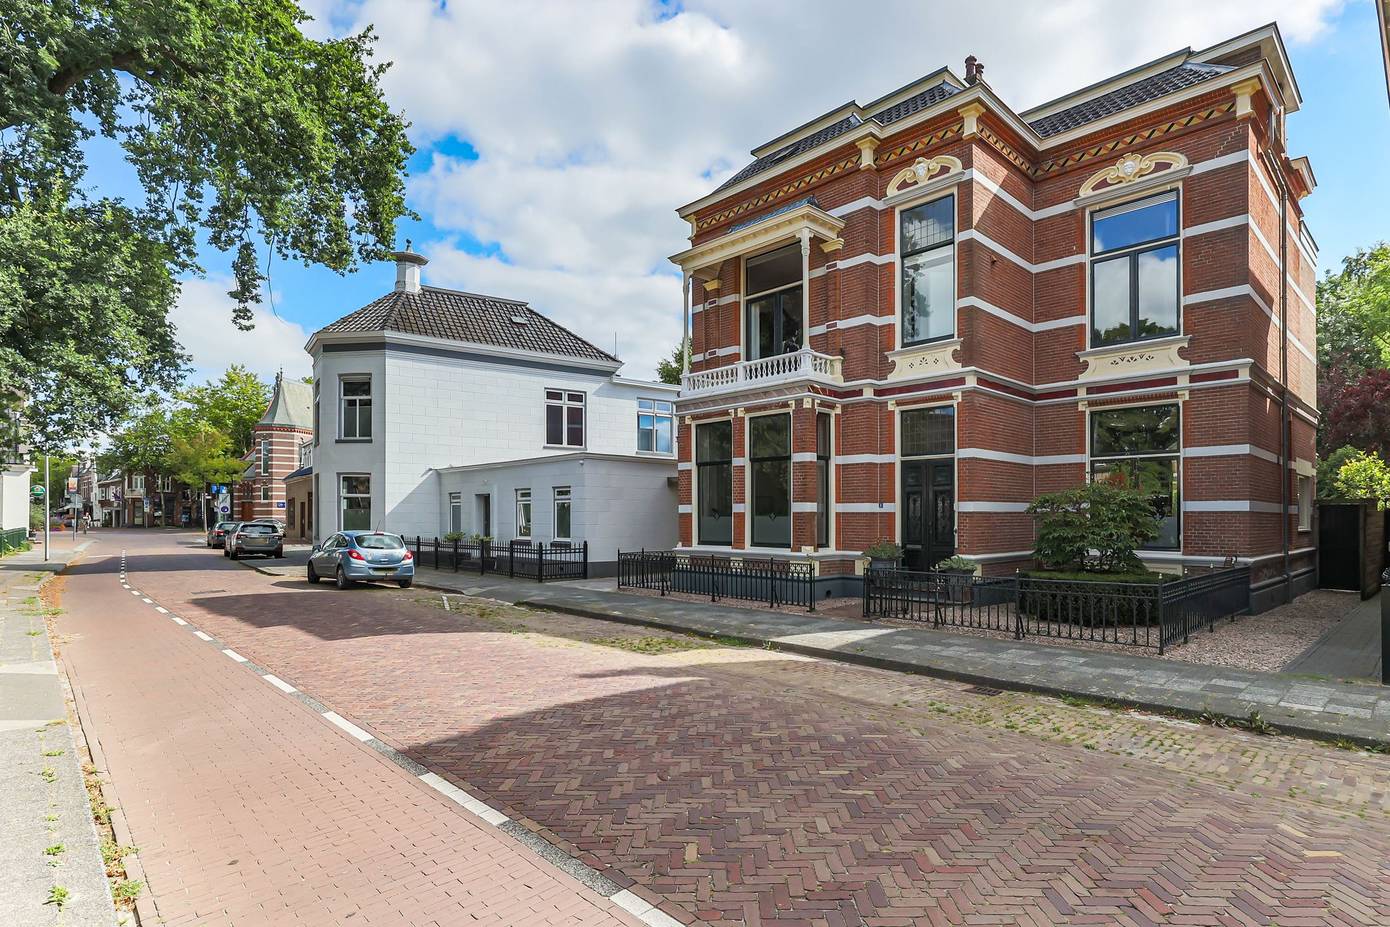 Te koop in Assen: Rijksmonumentale herenhuis met acht slaapkamers